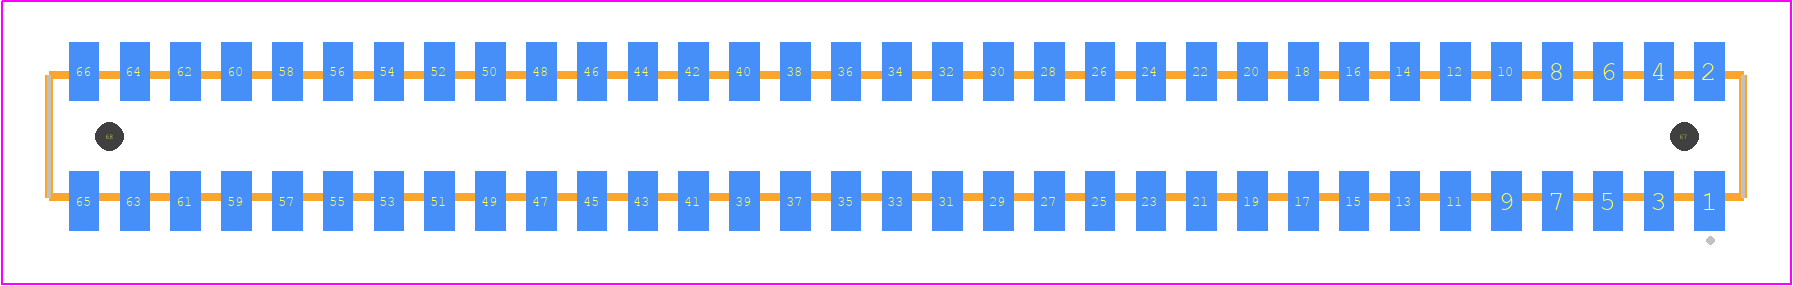 CLP-133-02-H-D-A - SAMTEC PCB footprint - Other - Other - CLP-133-02-XXX-D-A